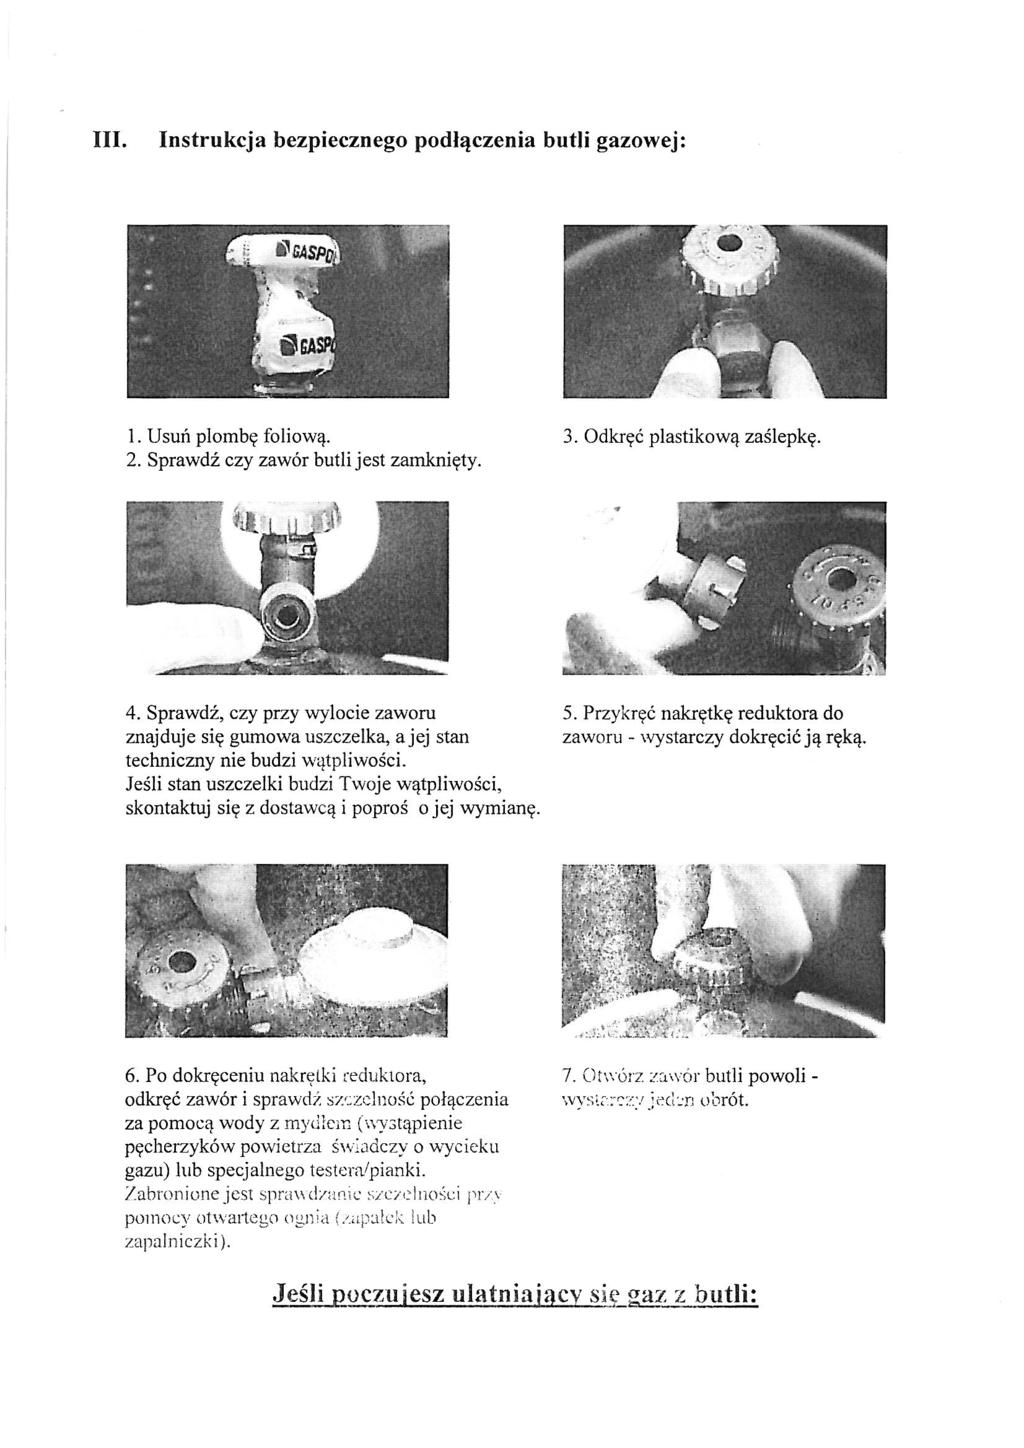 III. Instrukcja bezpiecznego podłączenia butli gazowej: I. Usuń plombę foliową. 2. Sprawdź czy zawór butli jest zamknięty. 3. Odkręć plastikową zaślepkę. 4.